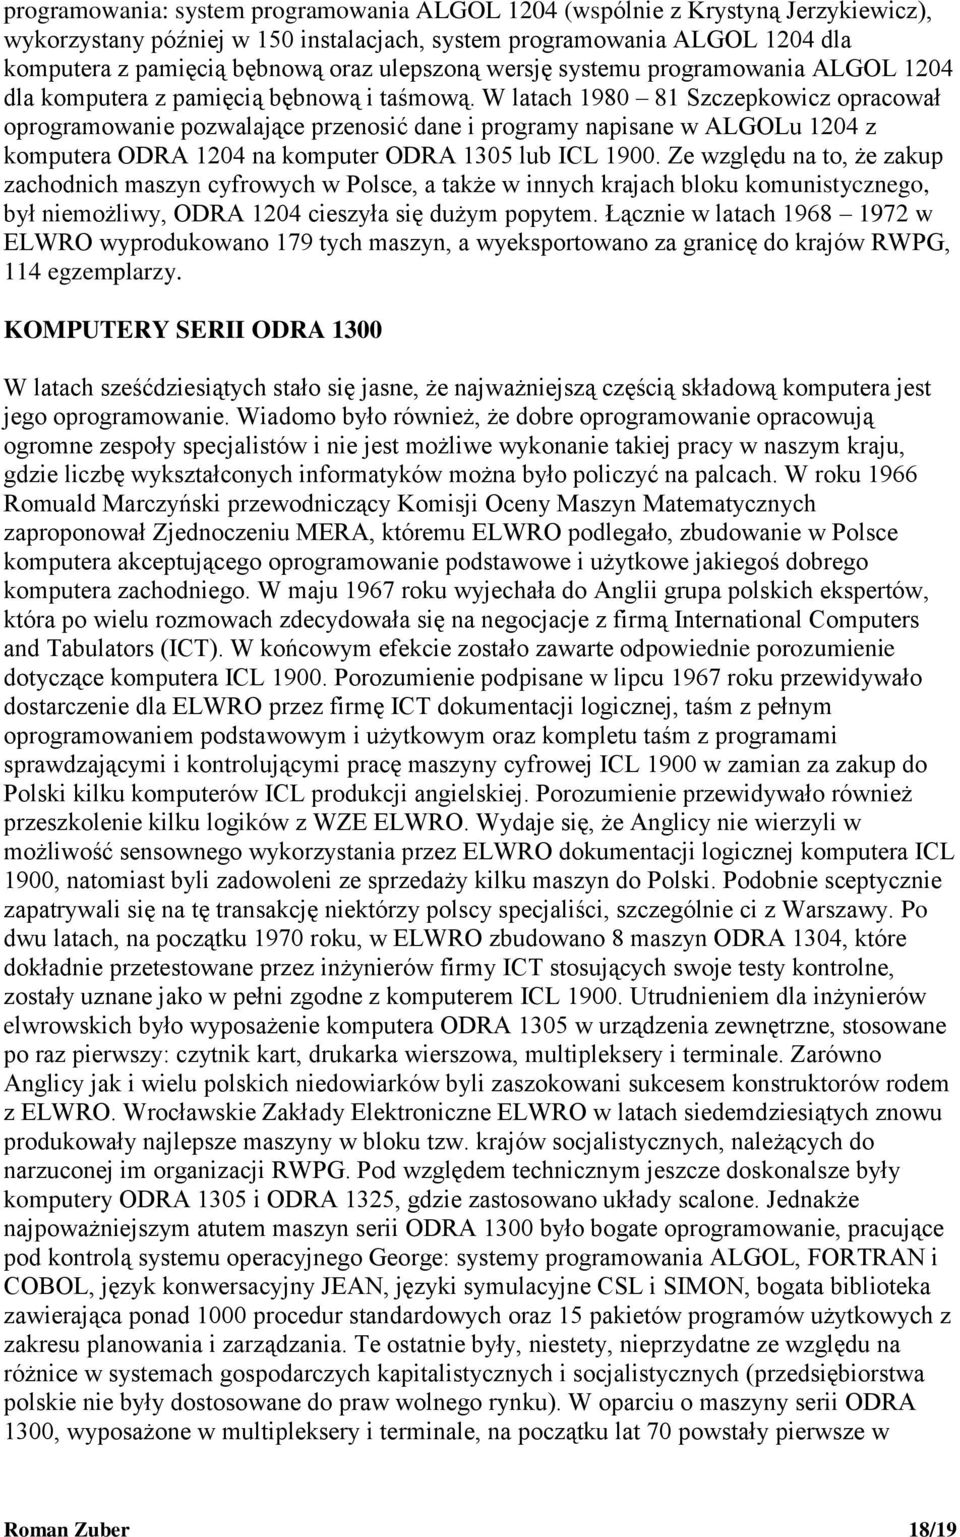 W latach 1980 81 Szczepkowicz opracował oprogramowanie pozwalające przenosić dane i programy napisane w ALGOLu 1204 z komputera ODRA 1204 na komputer ODRA 1305 lub ICL 1900.